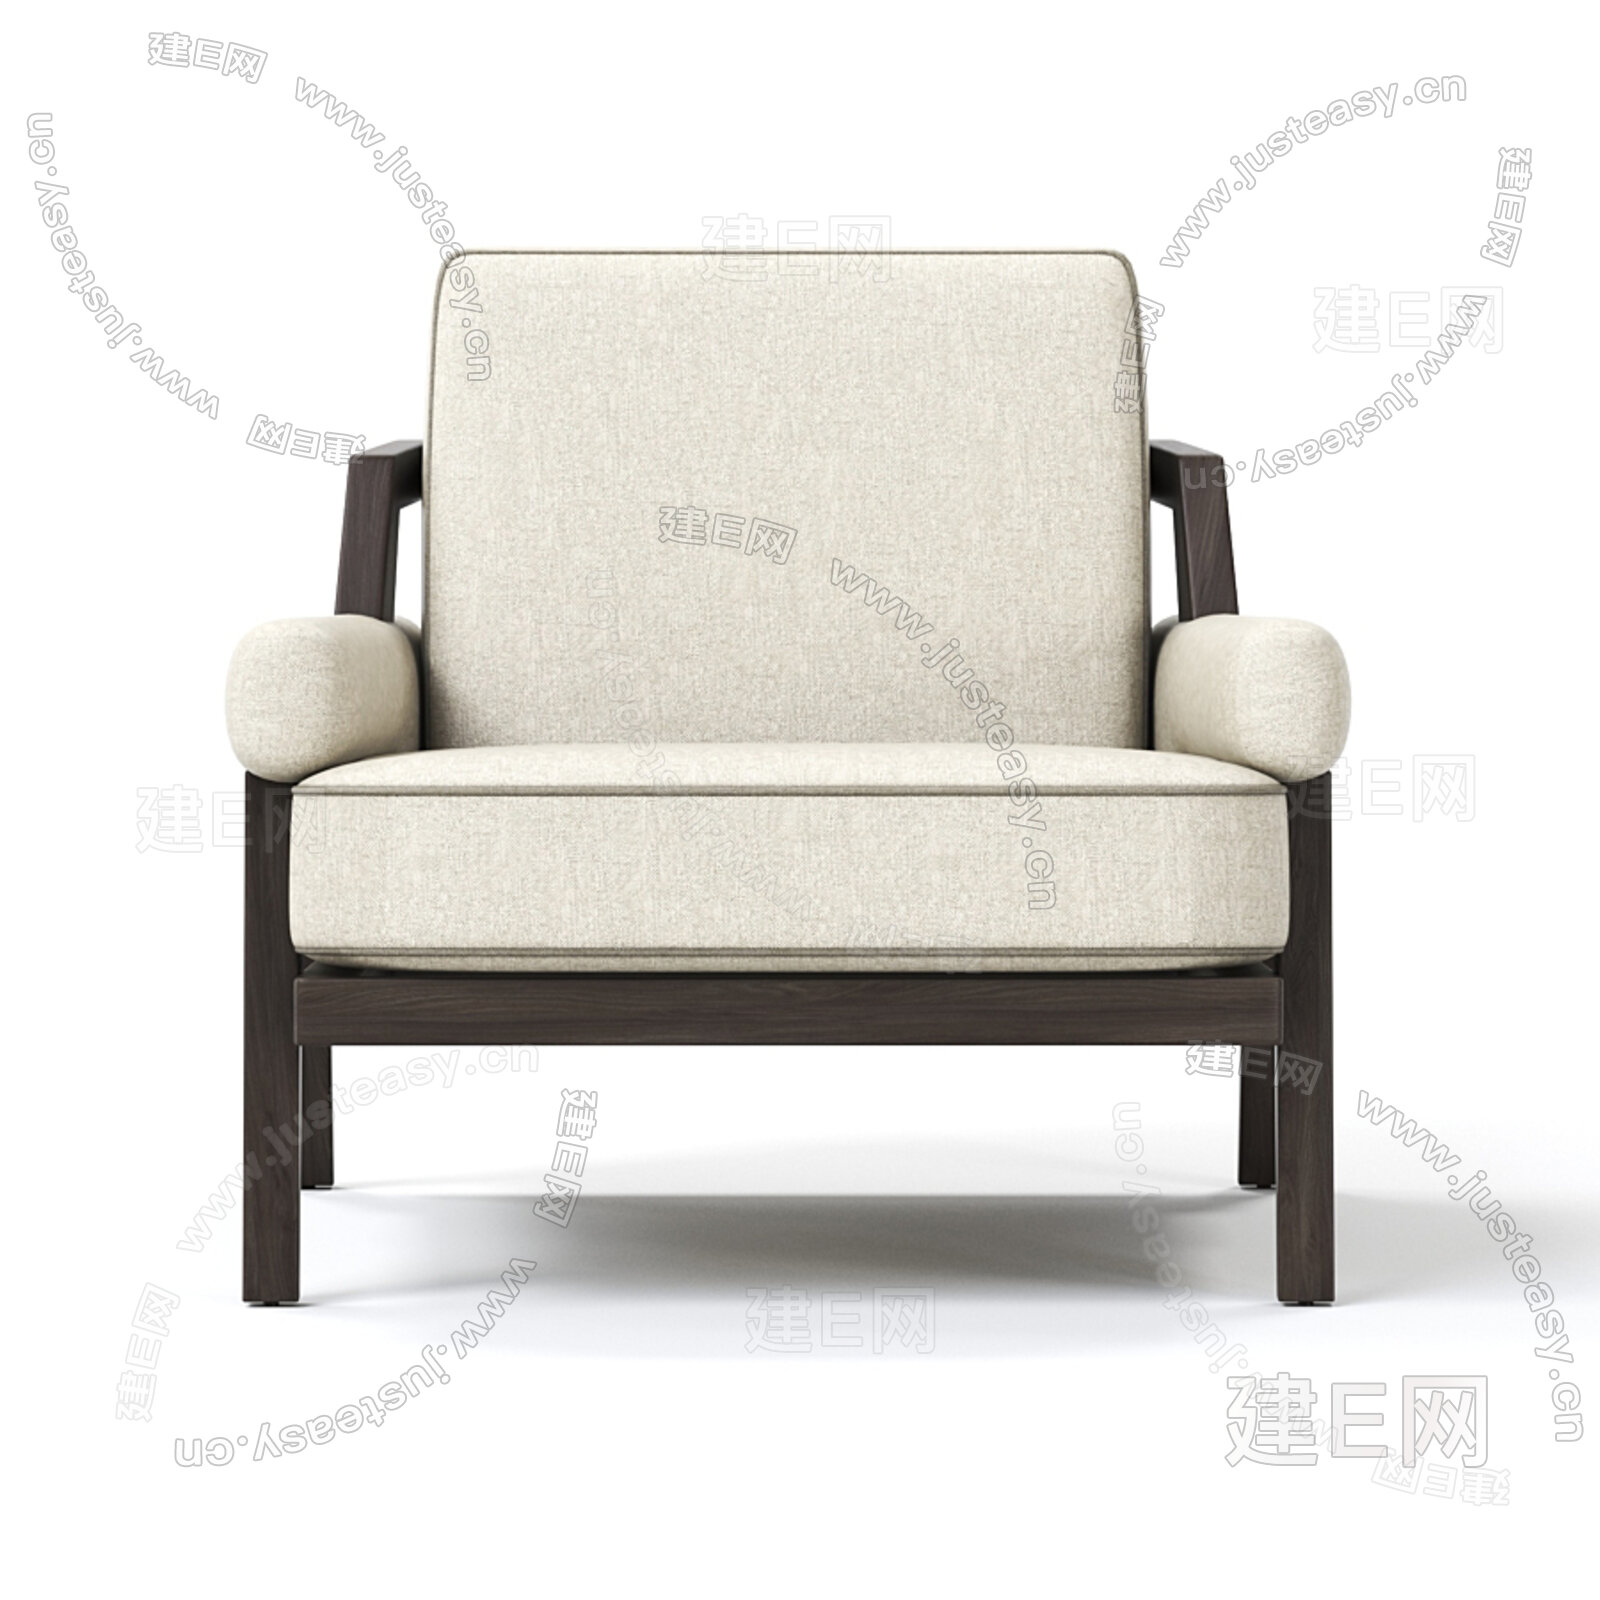 意大利 Giorgetti 现代单人沙发3d模型